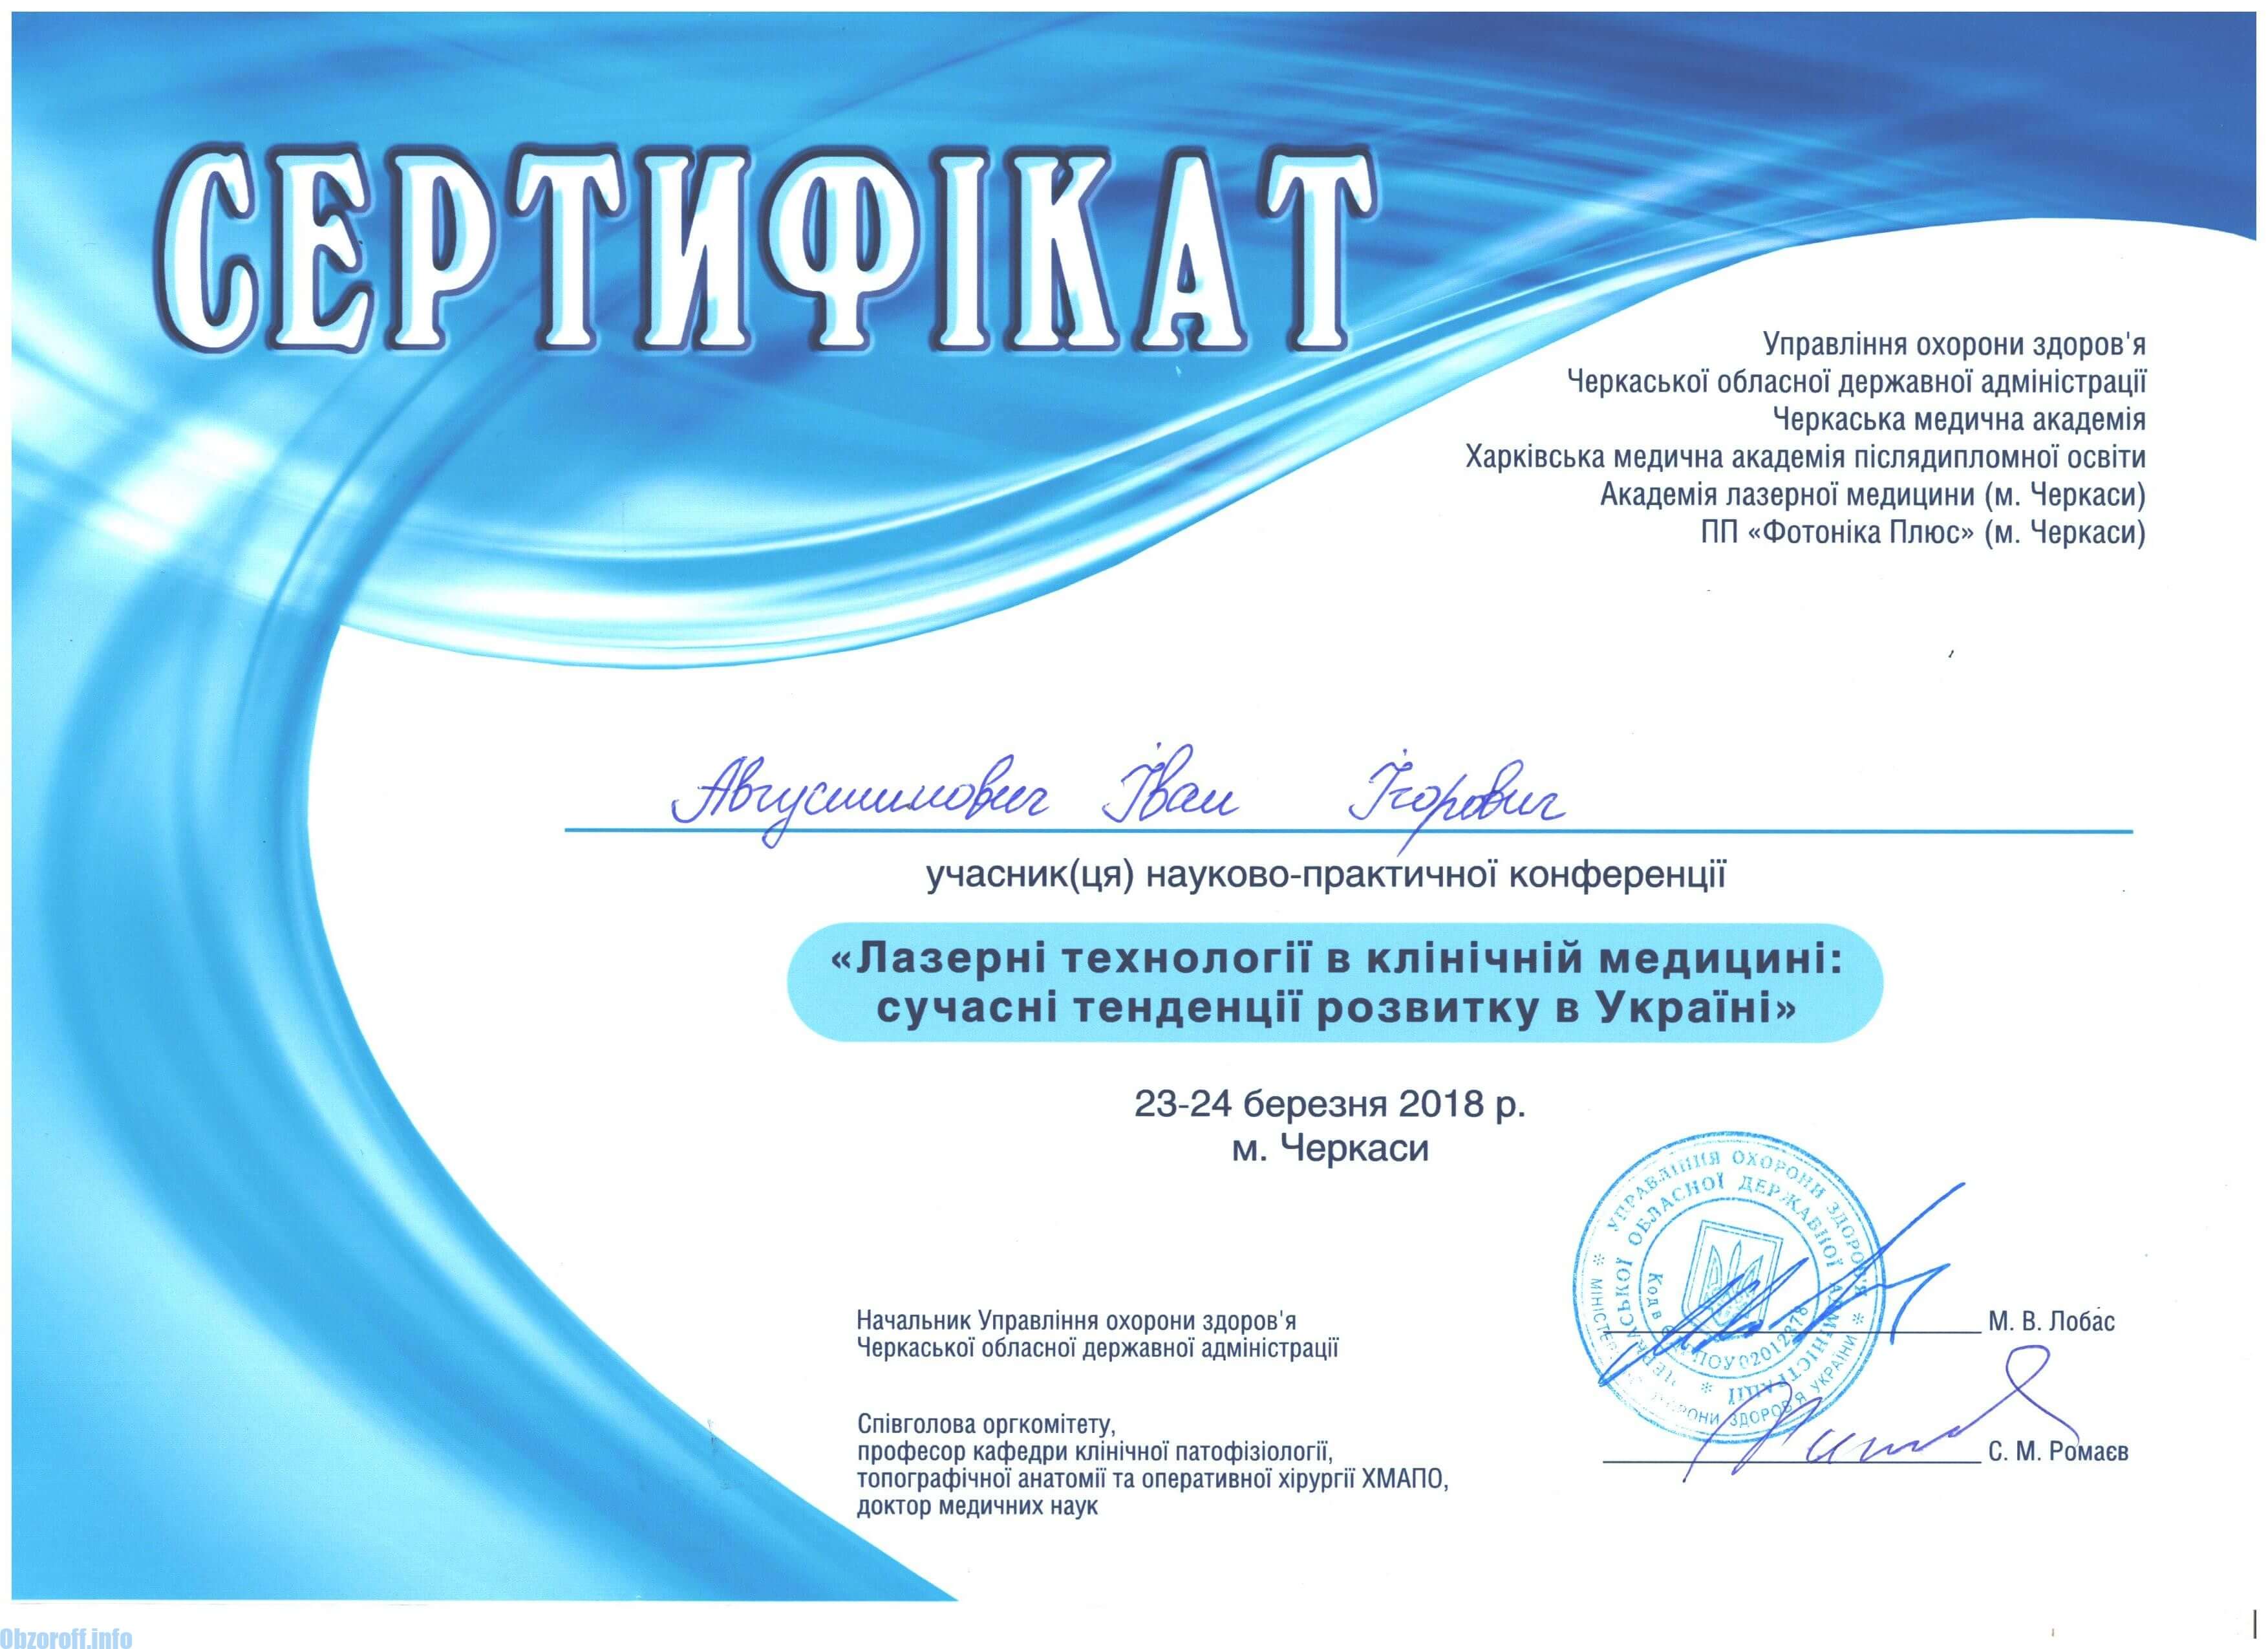 Certifikácia laserovej technológie v klinickej medicíne